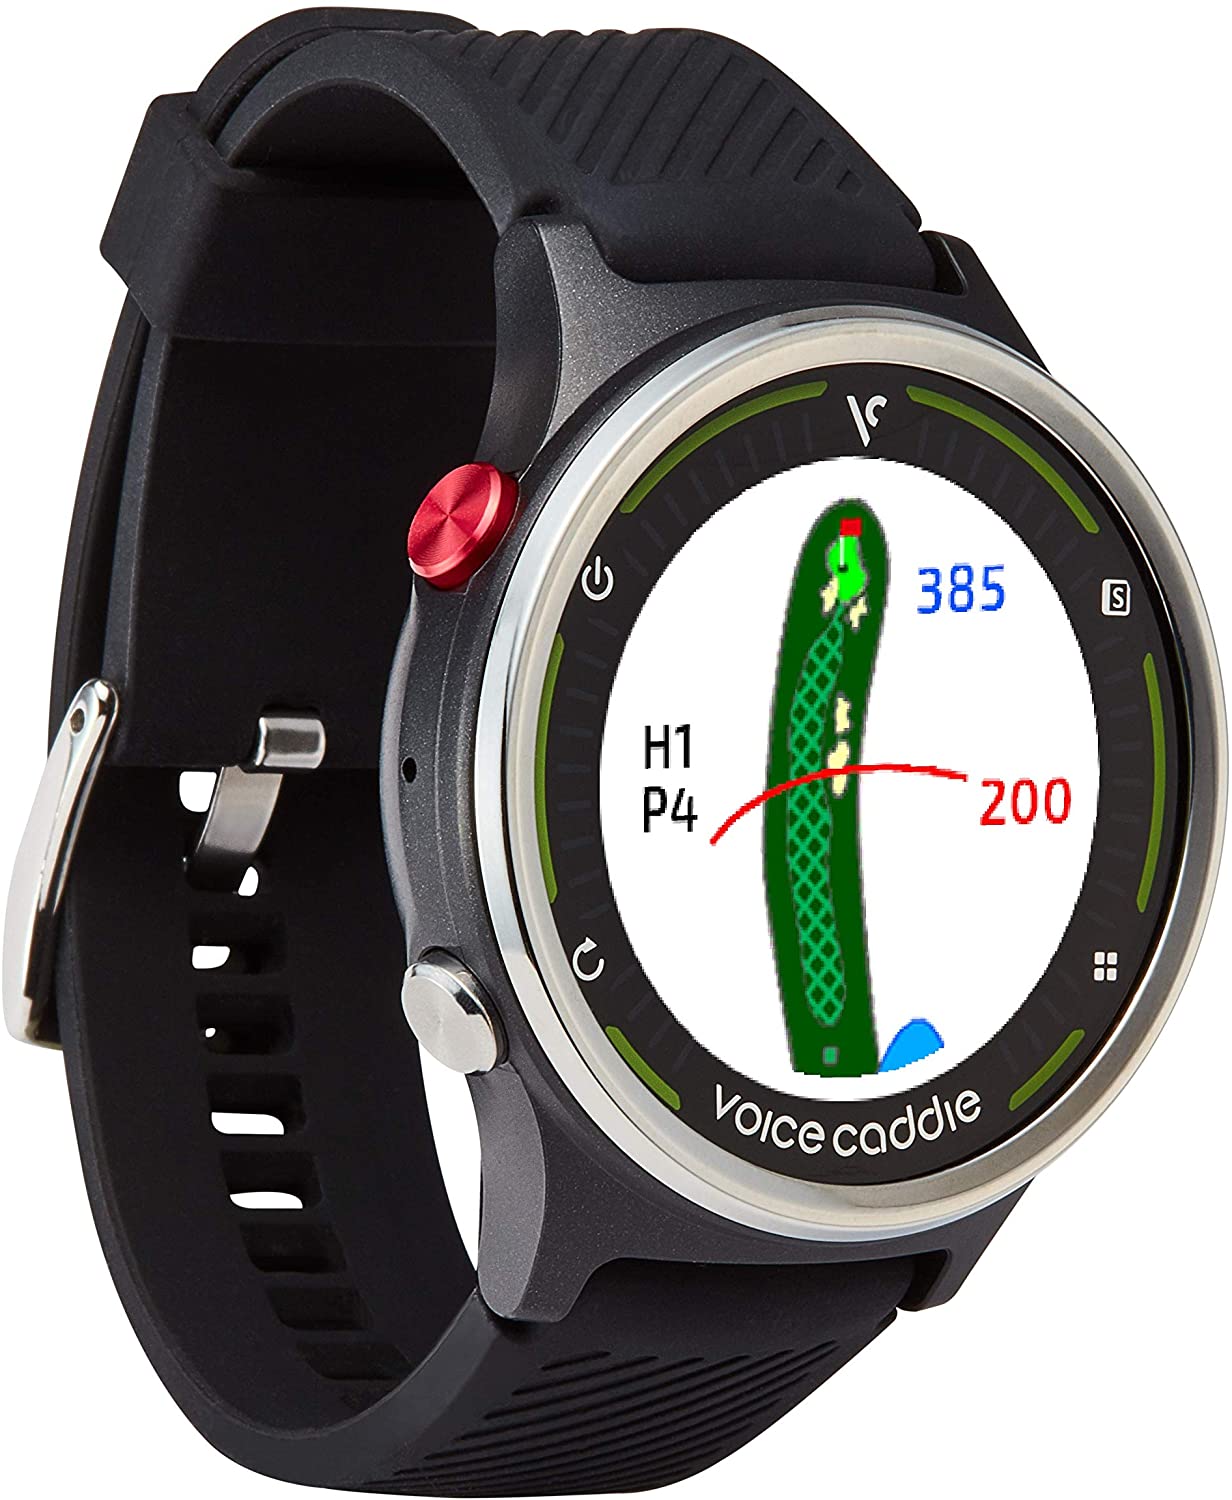 Mens Voice Caddie G1 Golf GPS Watches